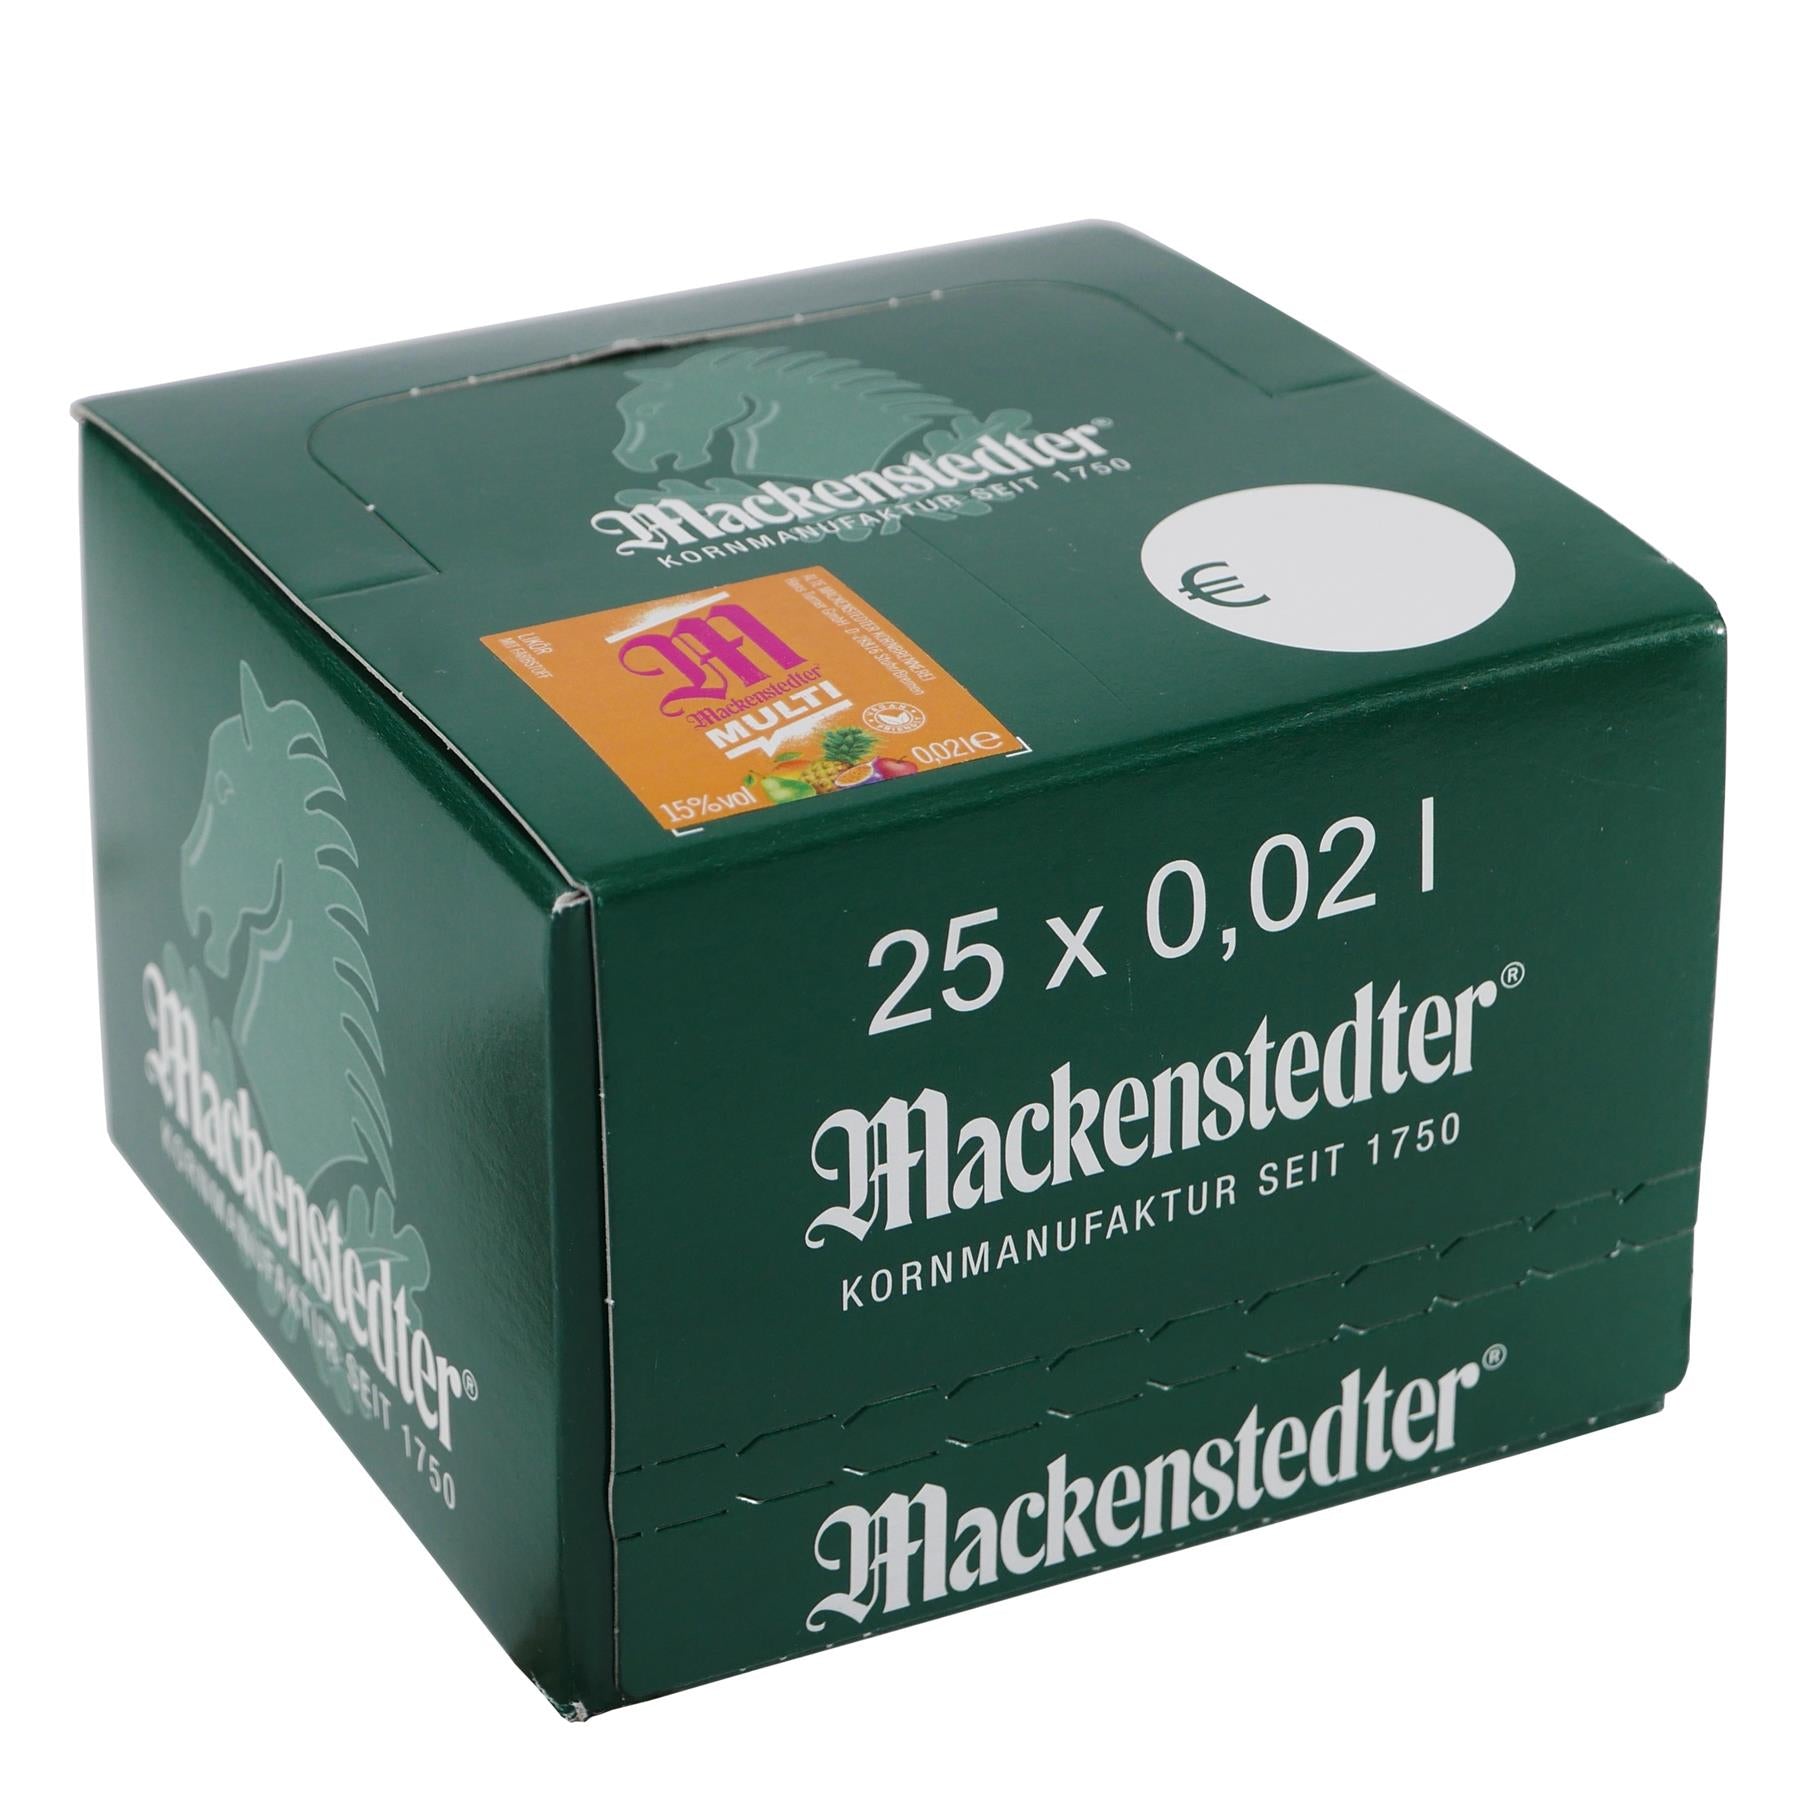 Mackenstedter Multi Likör (25 x 0,02L)